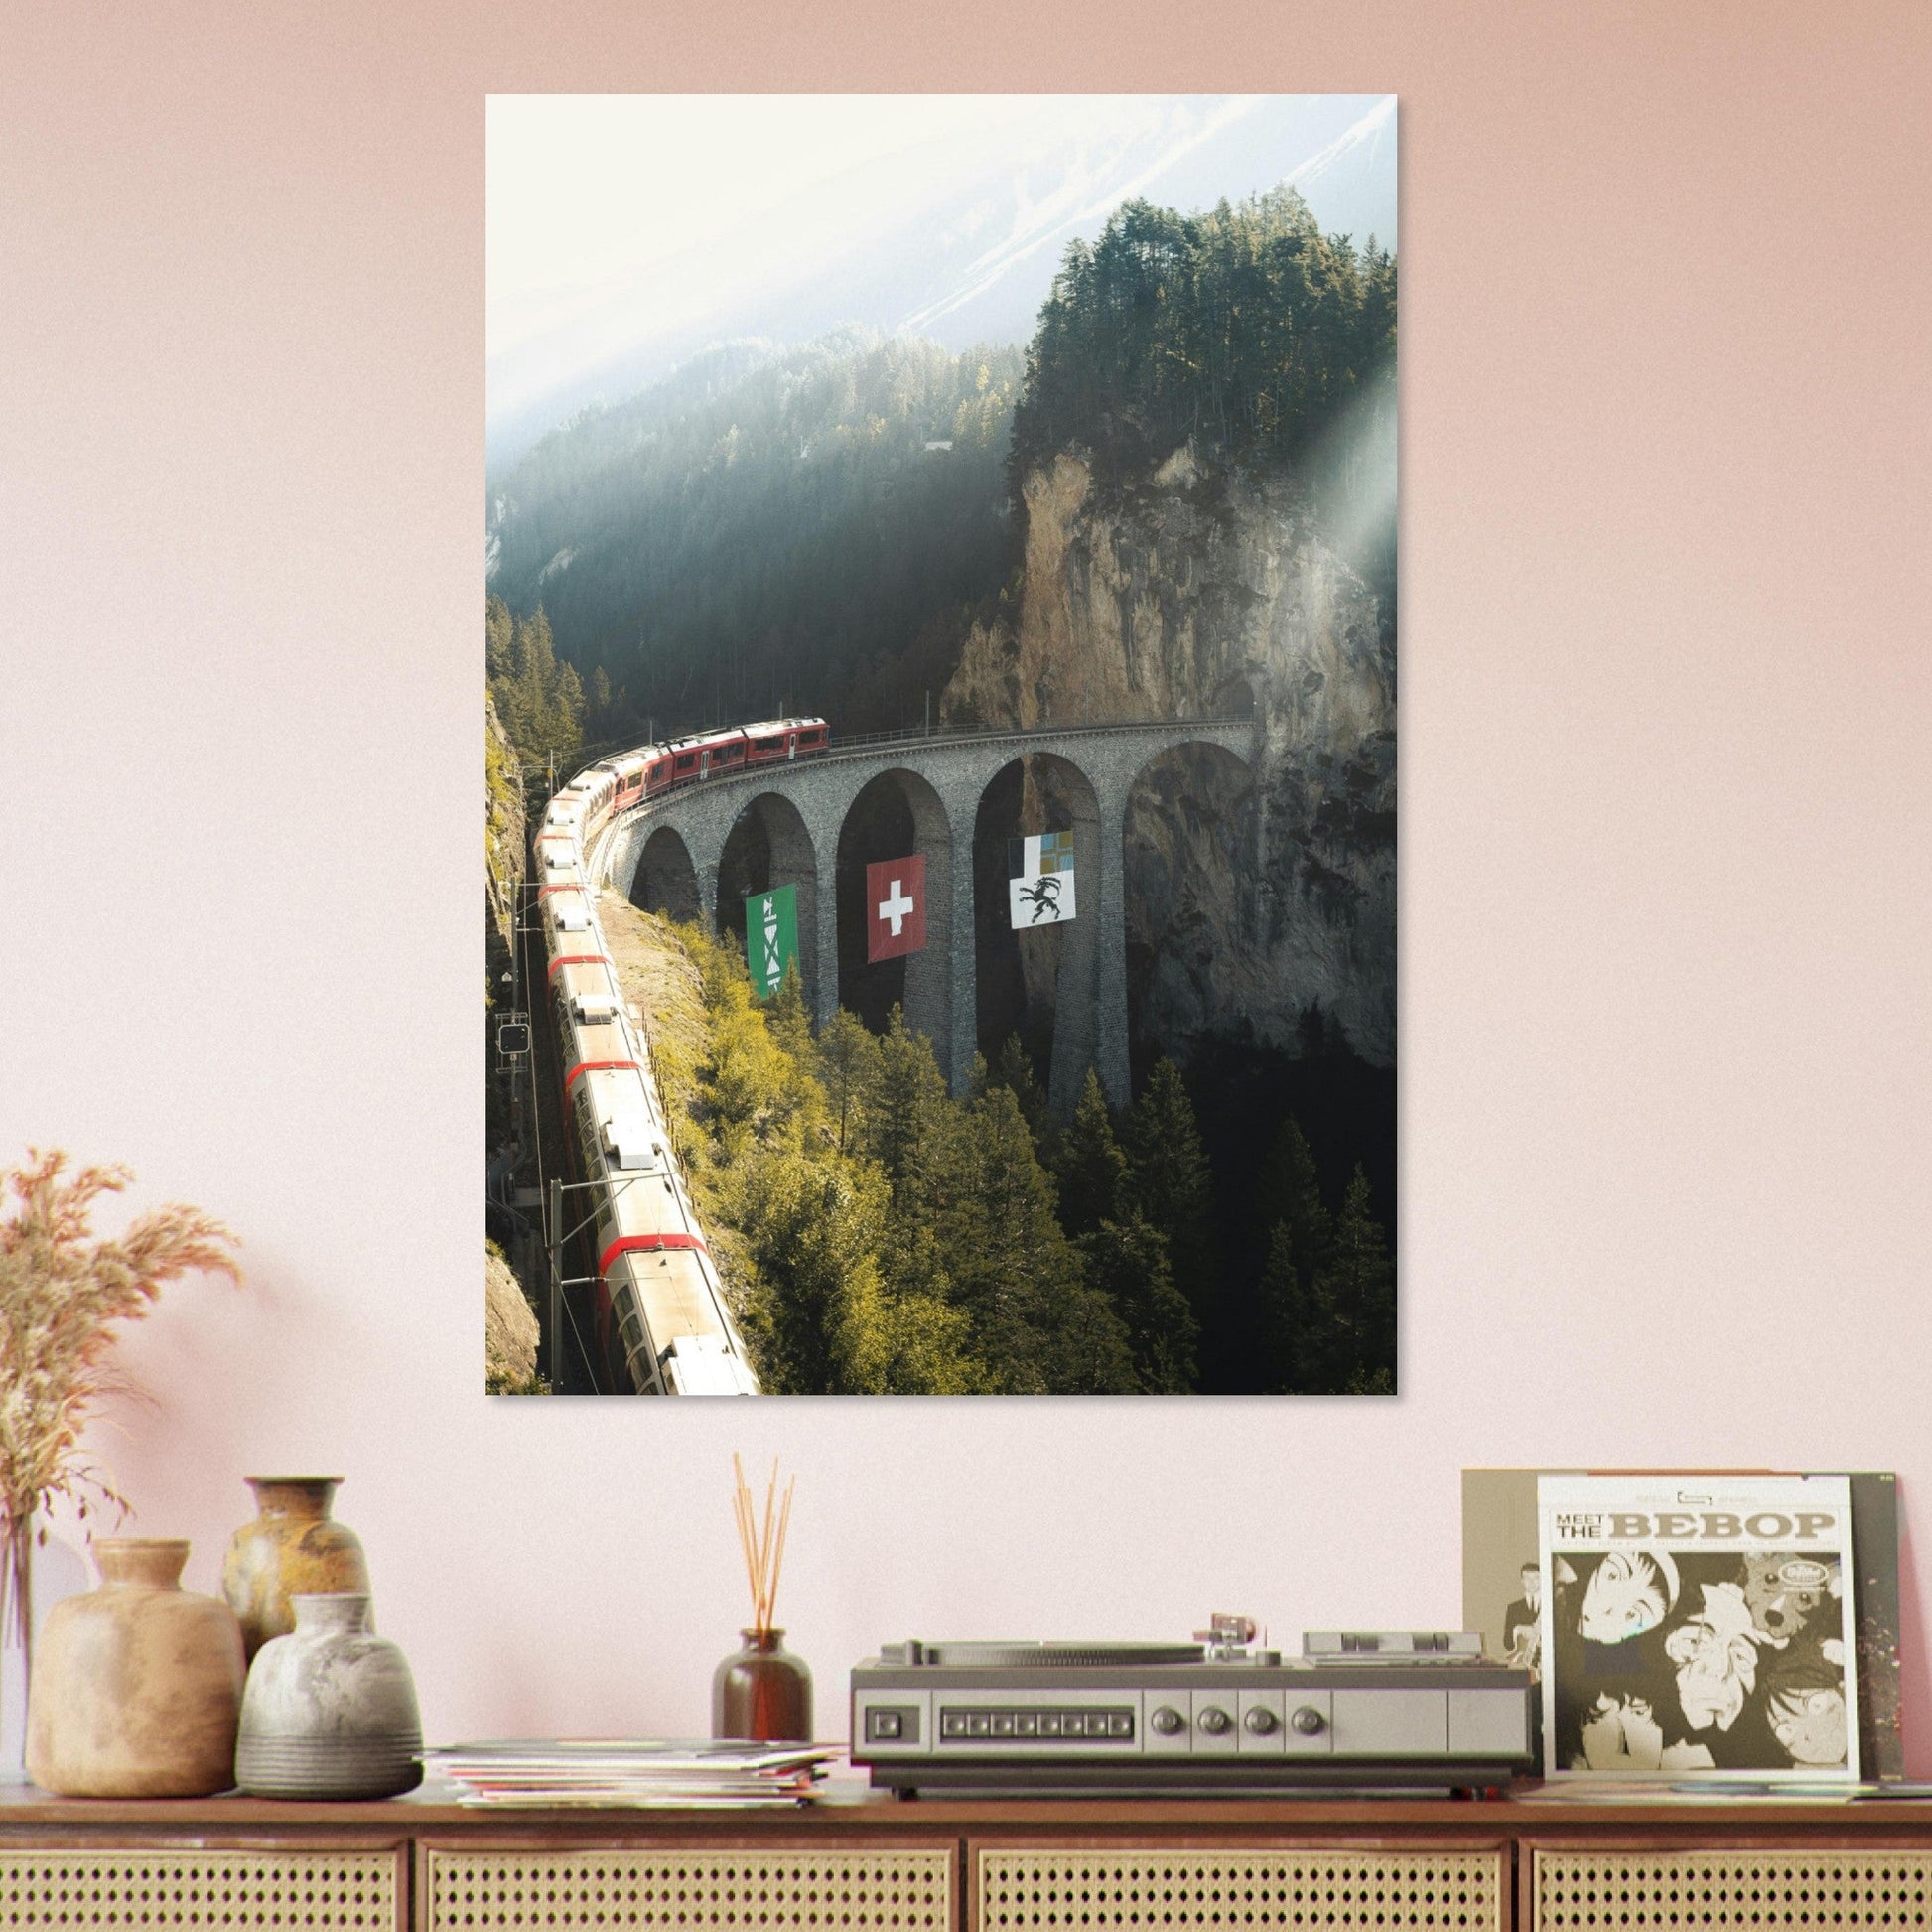 Vente Photo d'un train sur le Viaduc de Landwasser, Suisse #3 - Tableau photo paysage